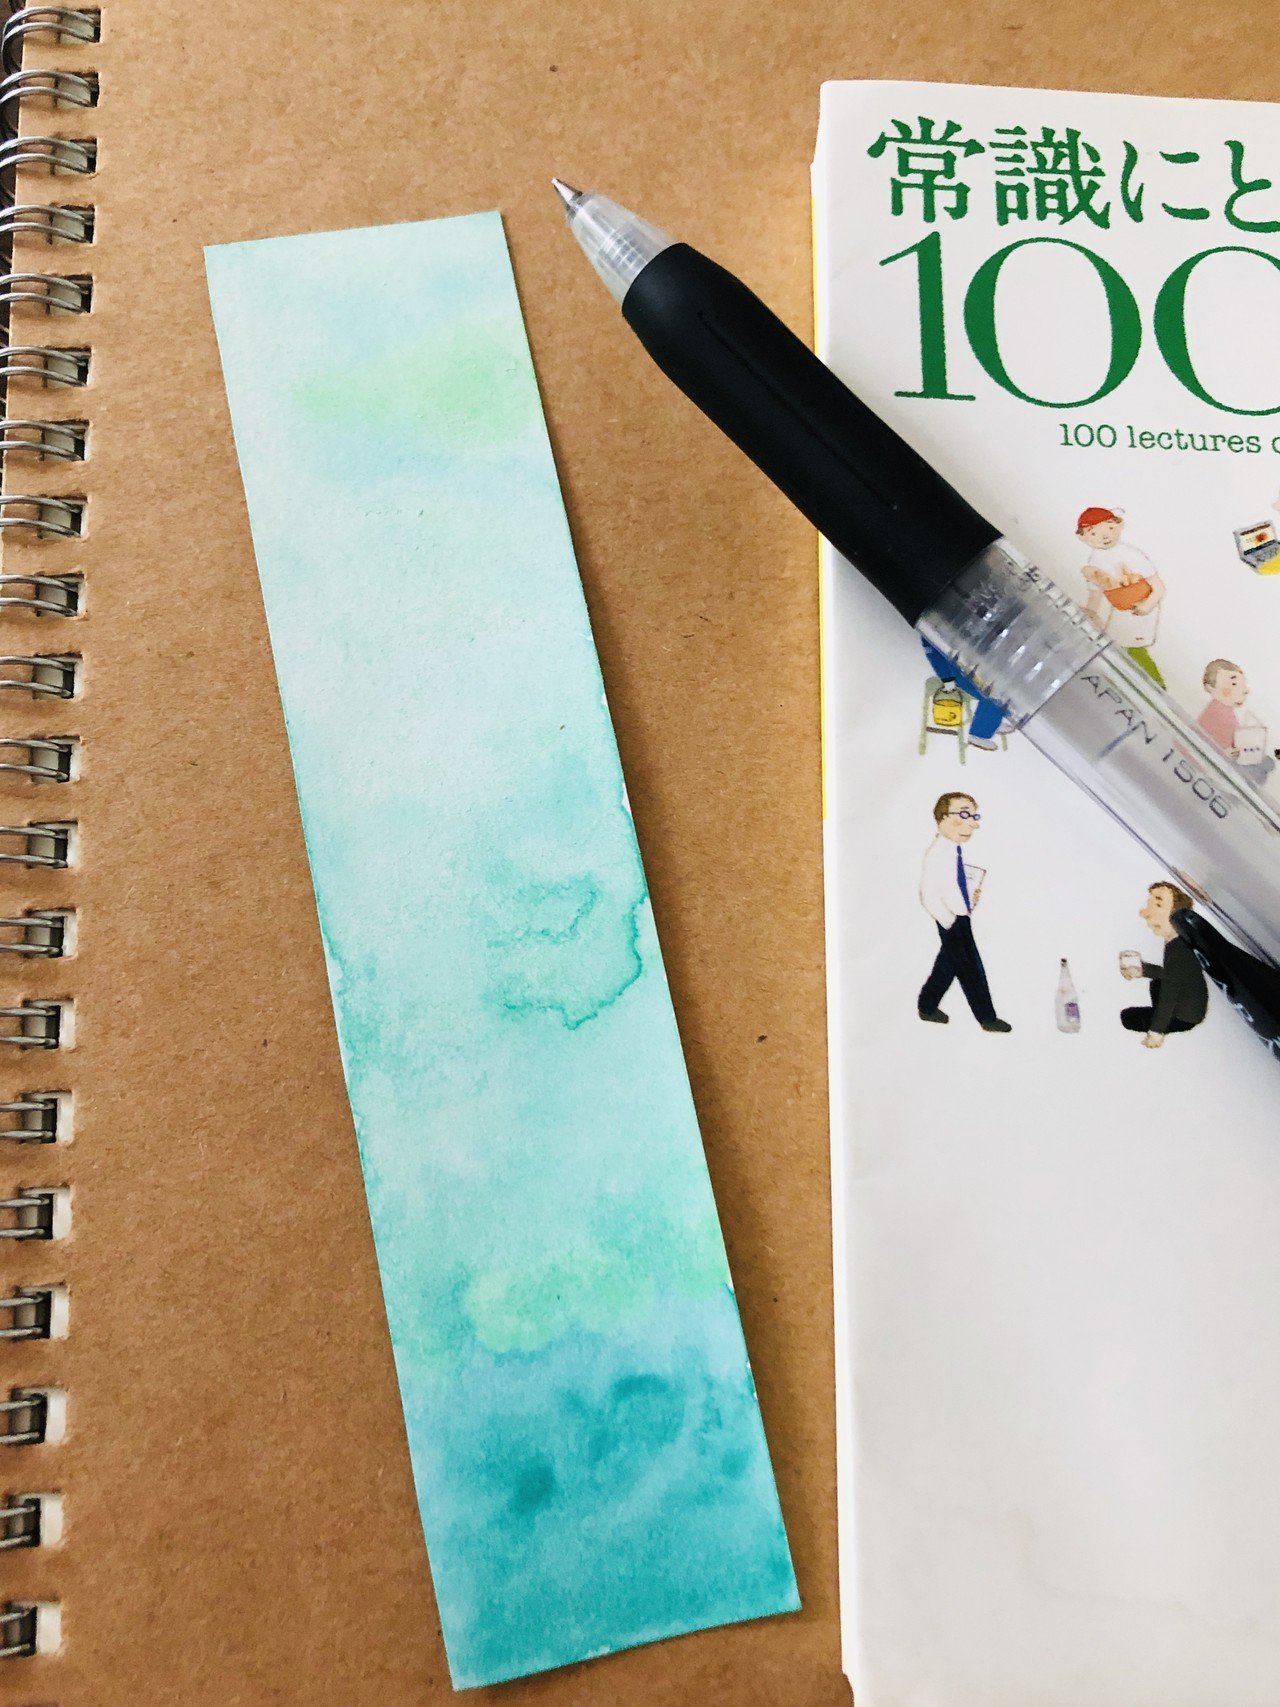 手作りしおり カラーセラピーで 心を穏やかにする 効果があると言われているグリーンをベースに描きました 色にも意味や効果があって面白いです このしおりは 読書家の母へのプレゼントとなりました 綺麗 一藤木 朝陽 Note